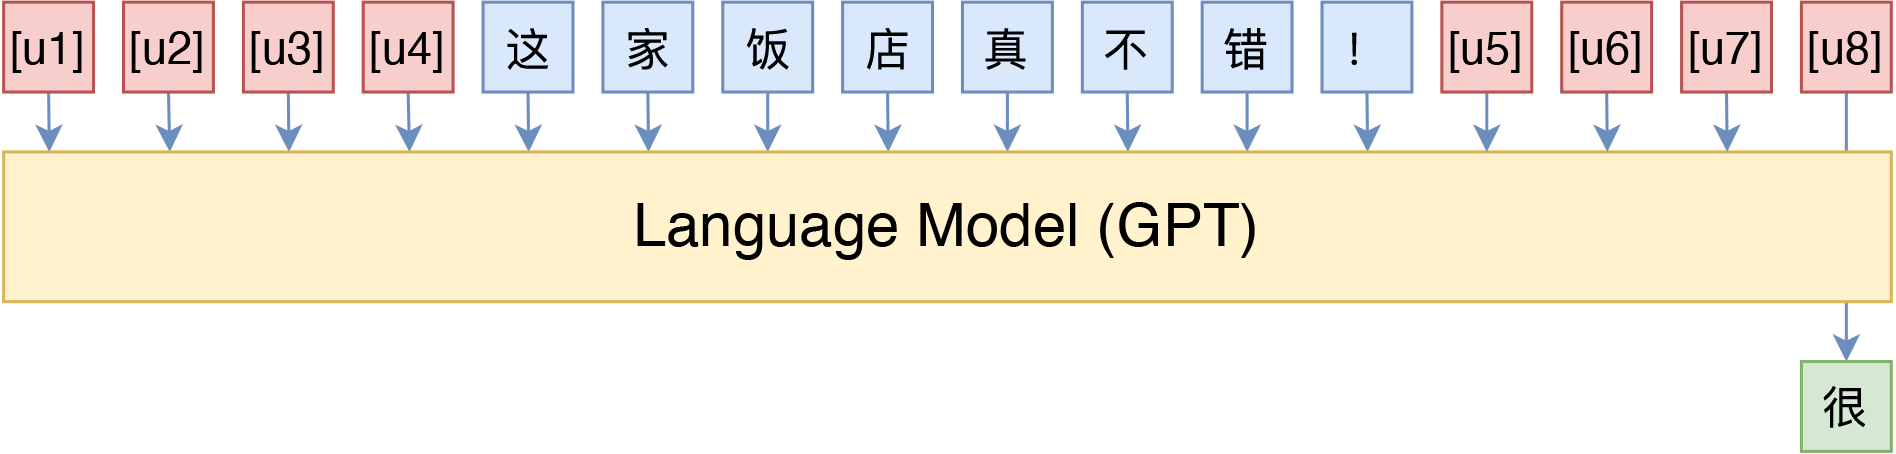 笔者在中文情感分类上使用的“GPT+P-tuning”模版